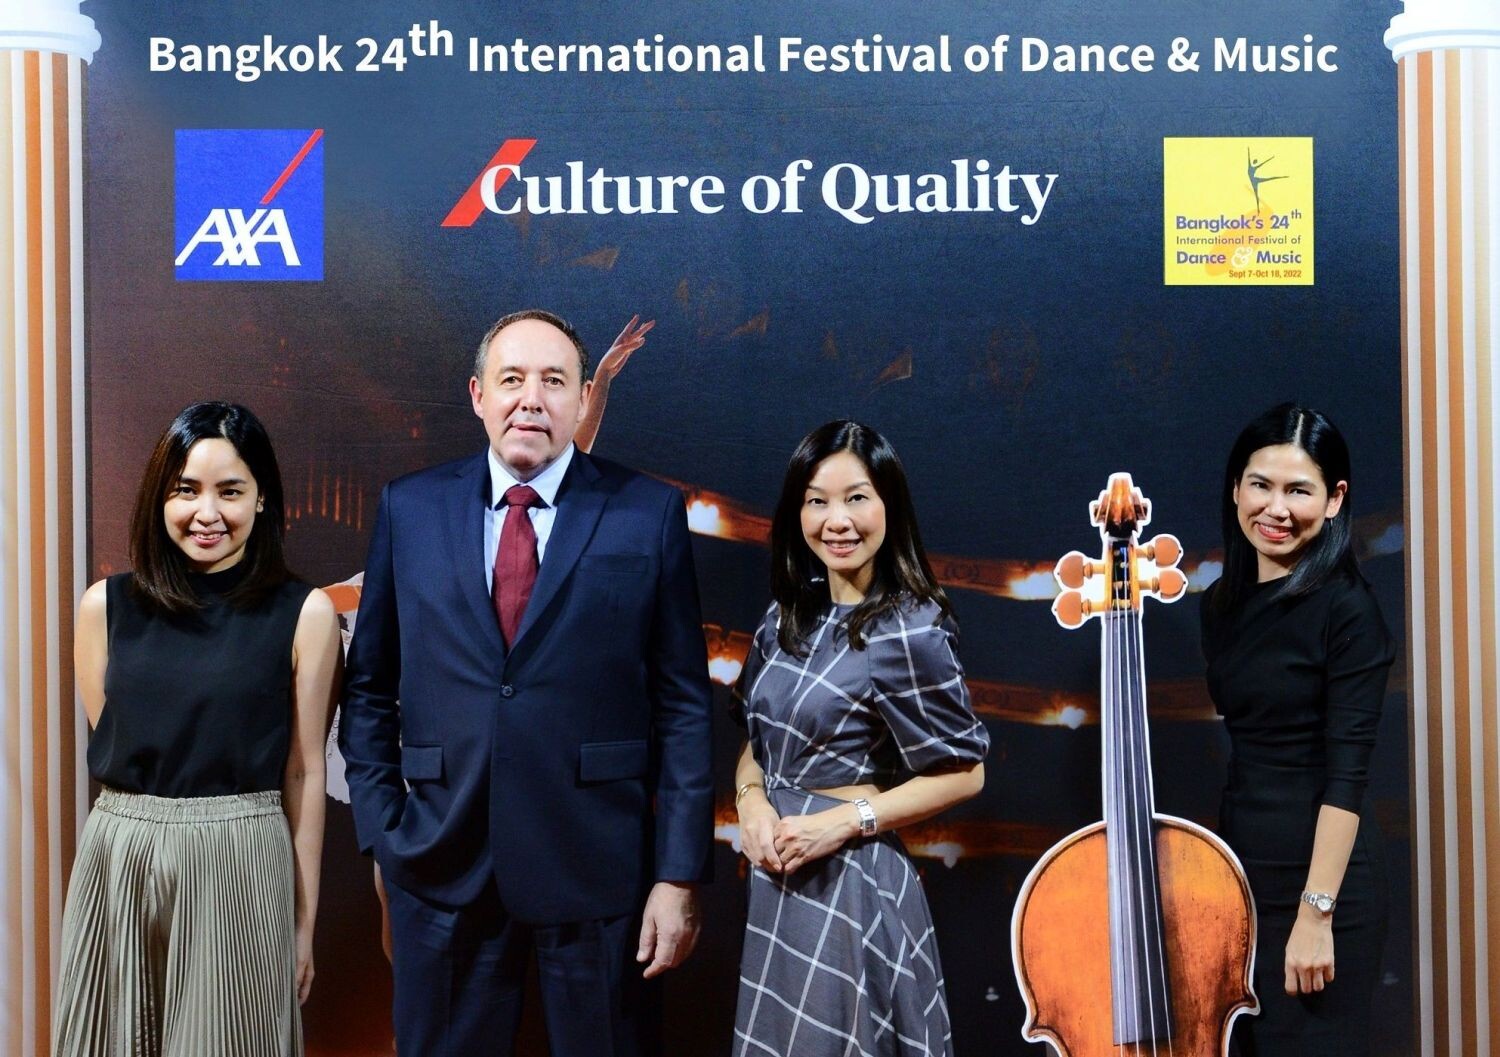 แอกซ่าสนับสนุน "วัฒนธรรมแห่งคุณภาพ" ในงานมหกรรมศิลปะการแสดงและดนตรีนานาชาติ กรุงเทพฯ ครั้งที่ 24